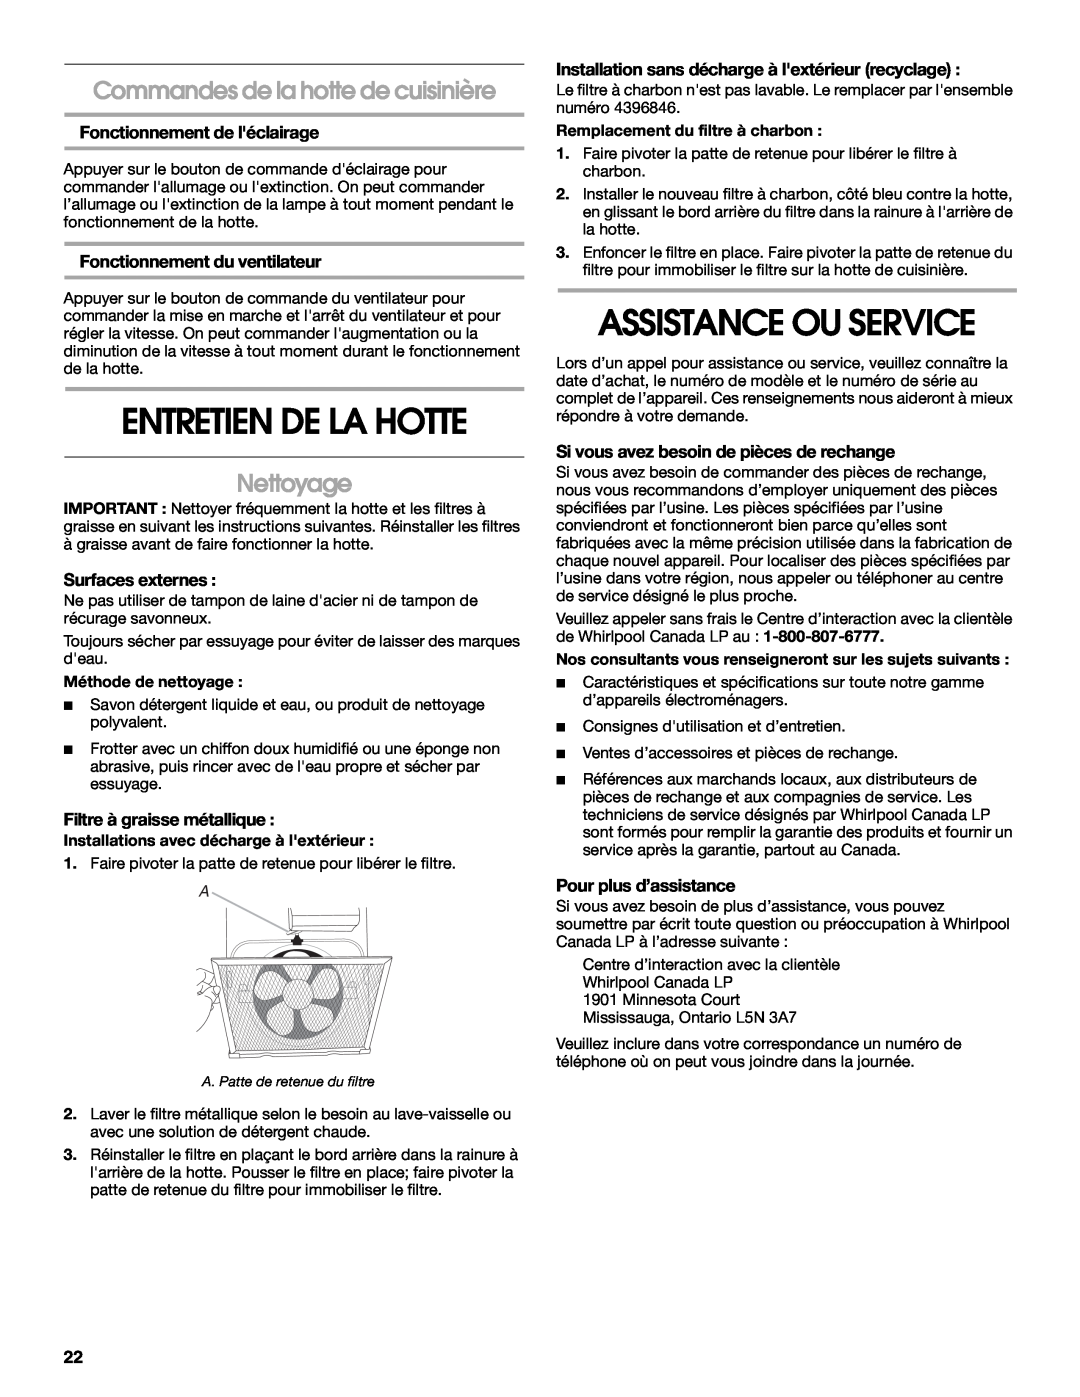 Whirlpool 24" (58 CM) Assistance Ou Service, Entretien De La Hotte, Commandes de la hotte de cuisinière, Nettoyage 